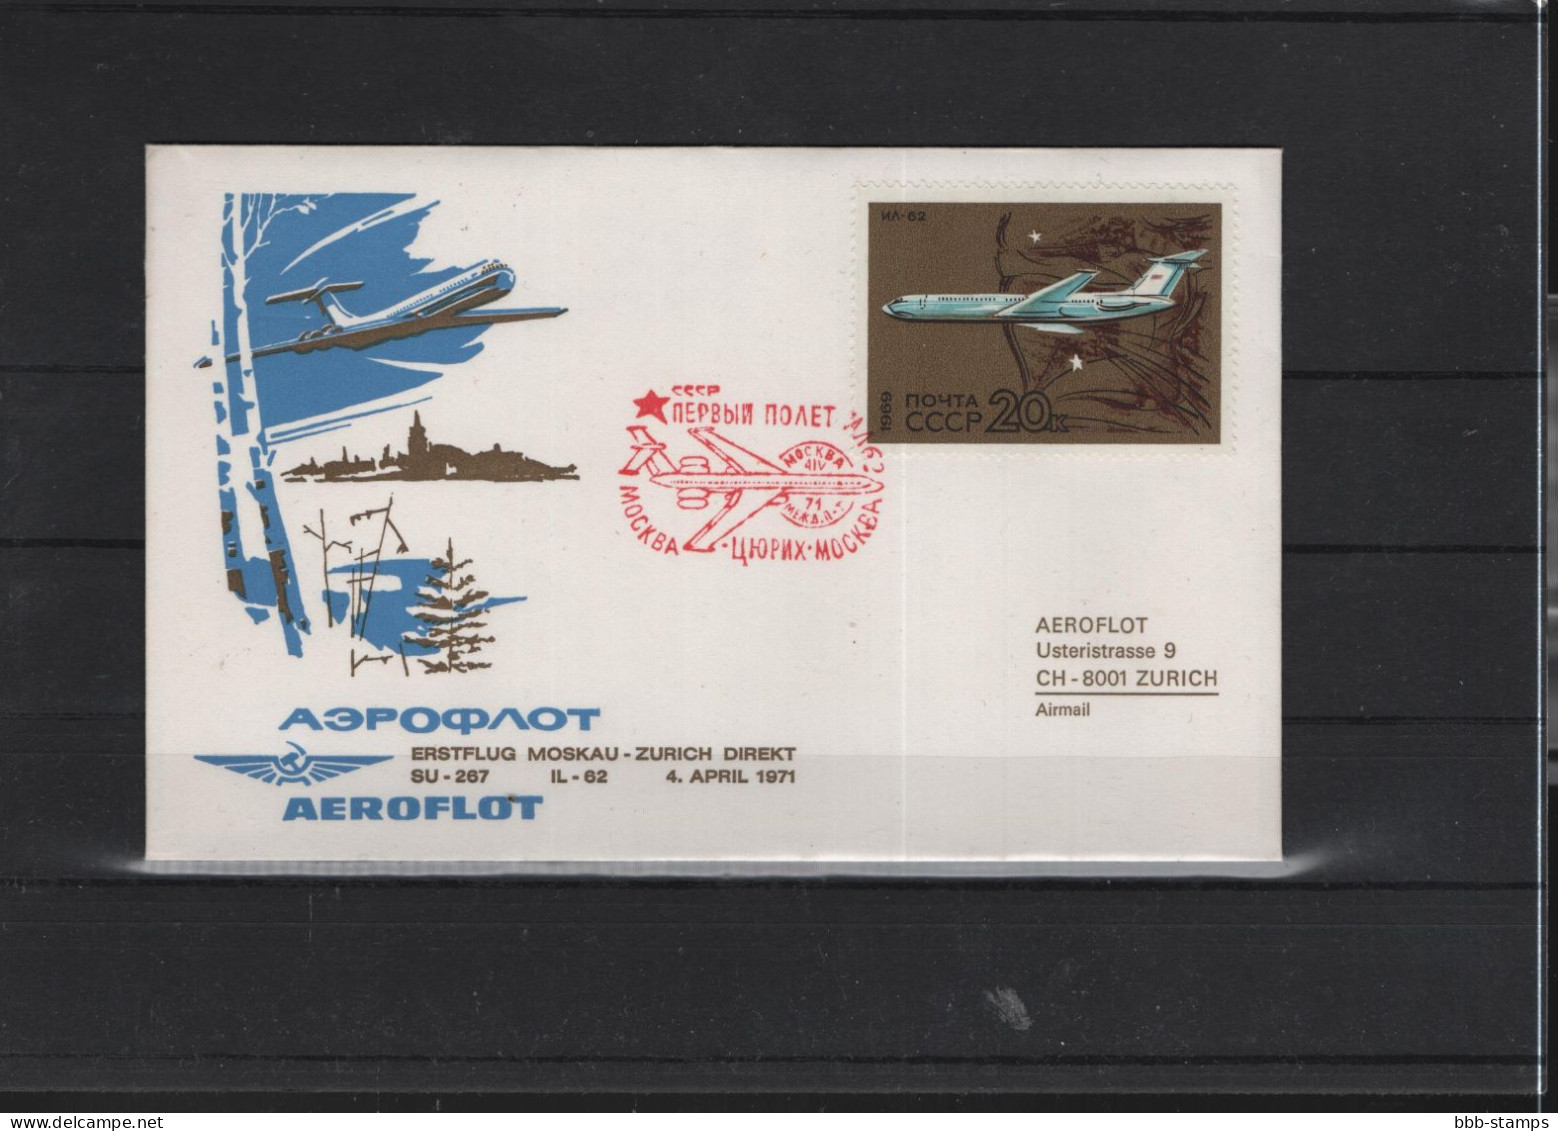 Schweiz Luftpost FFC Aeroflot 3.4.1971 Zürich - Moskau VV - Primi Voli